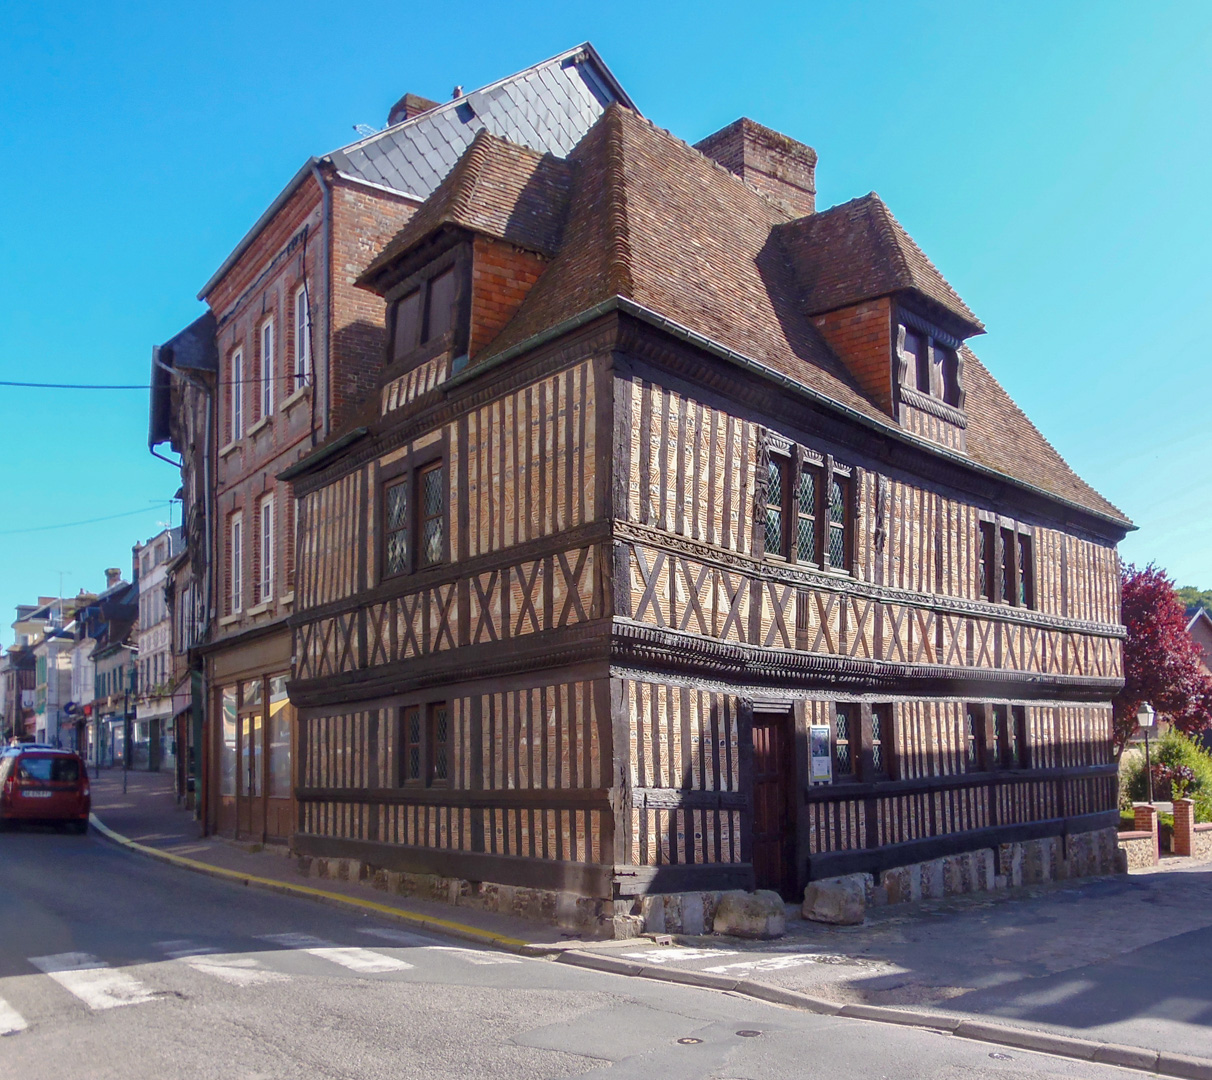 Orbec : Le vieux manoir construit en 1568